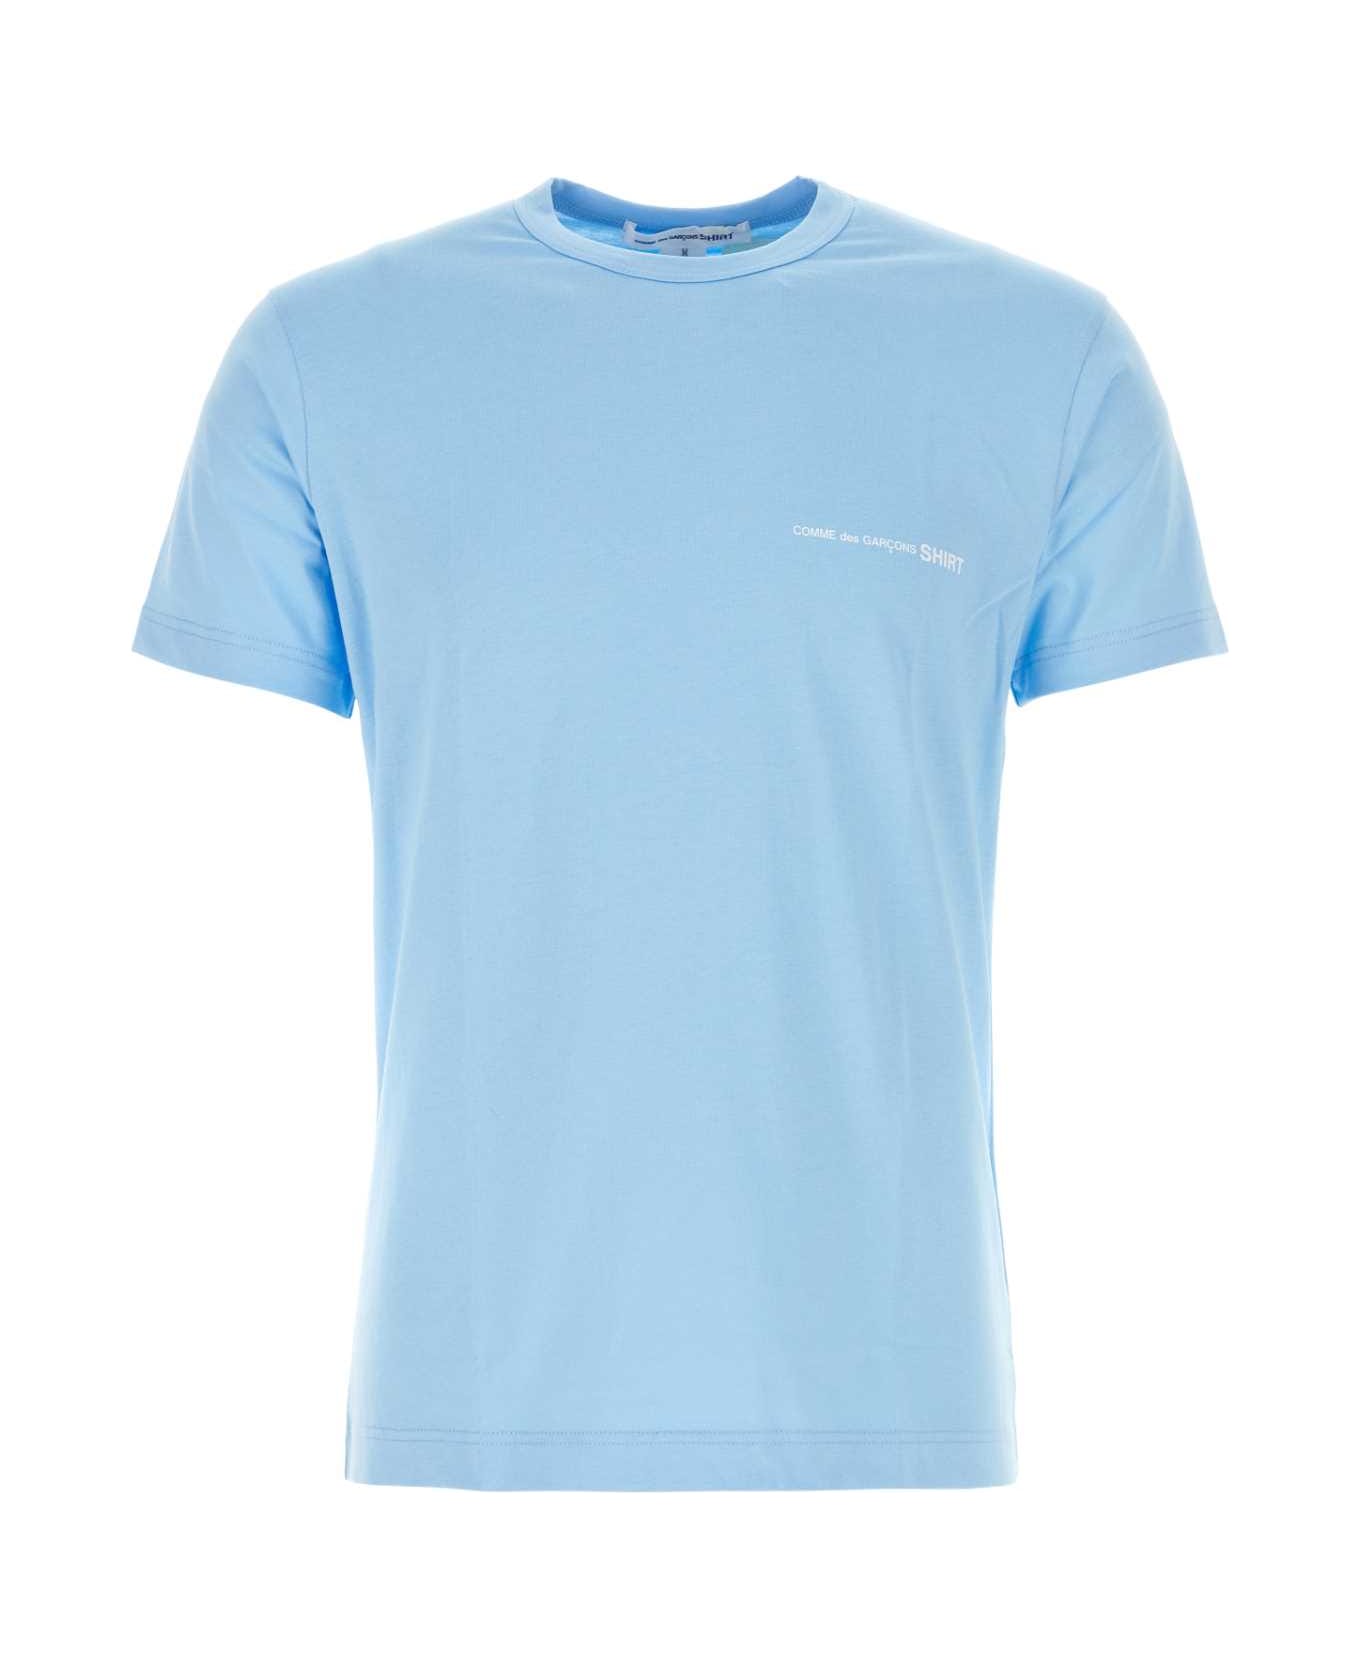 Comme des Garçons Light Blue Cotton T-shirt - BLUE シャツ